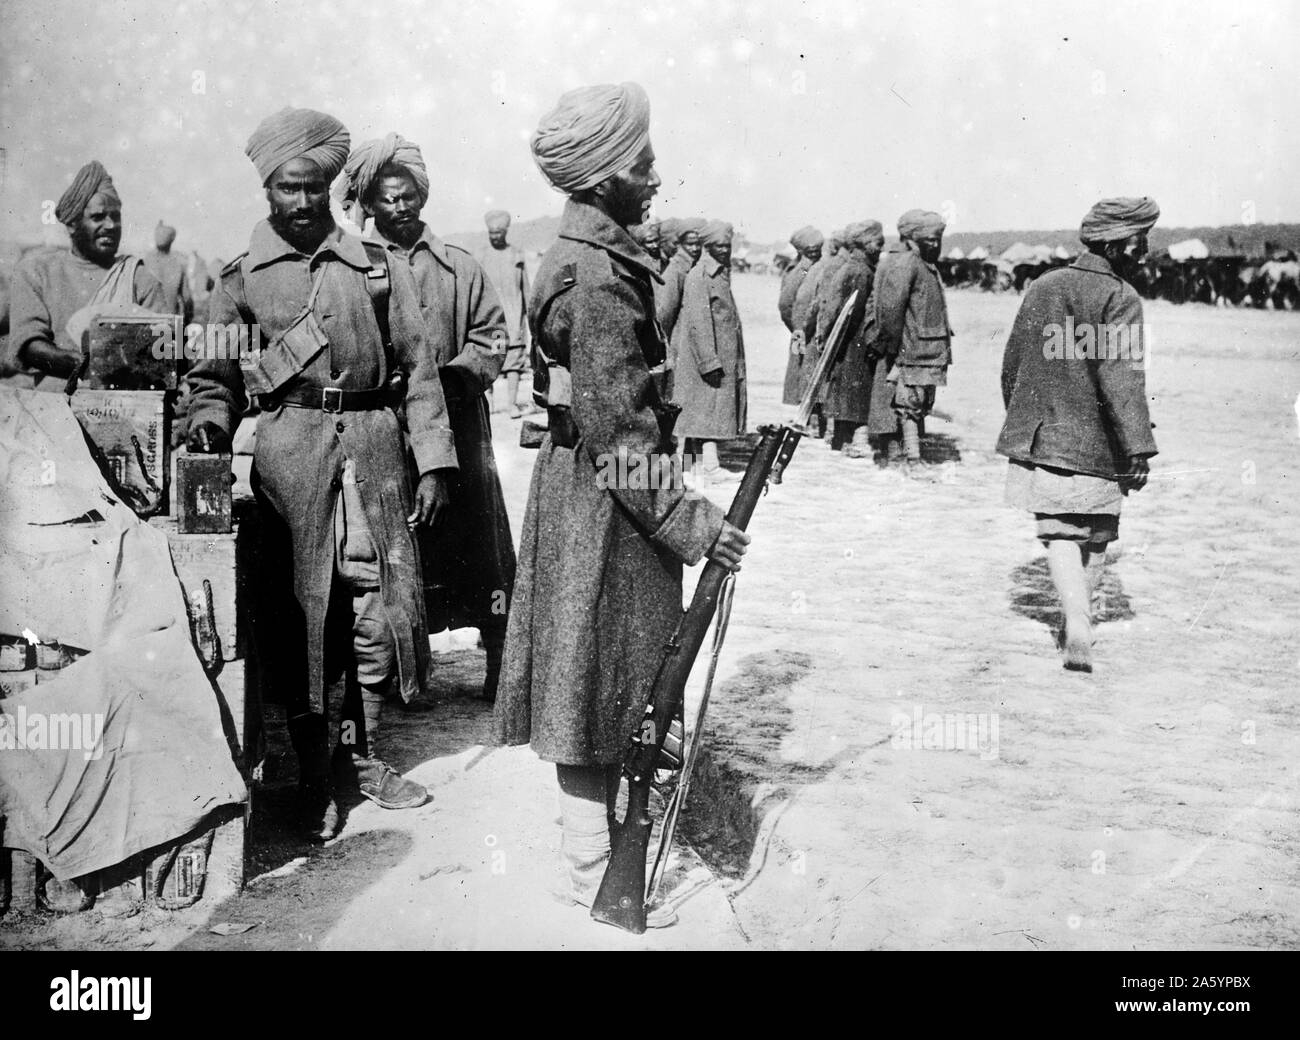 Photographie de soldats indiens servant en France pendant la Première Guerre mondiale. Datée 1915 Banque D'Images